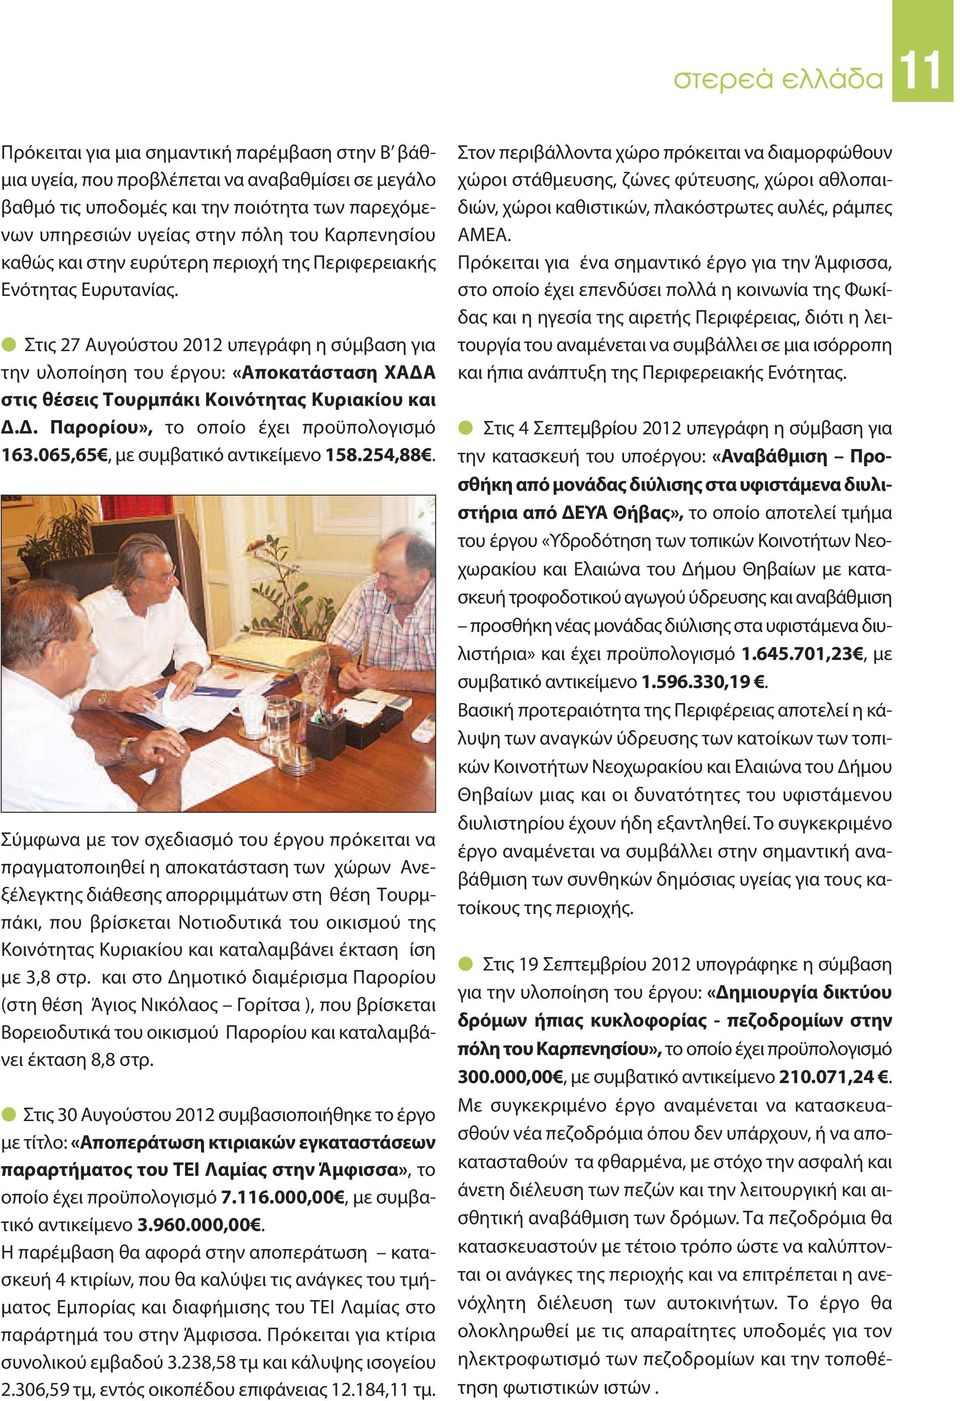 Στις 27 Αυγούστου 2012 υπεγράφη η σύμβαση για την υλοποίηση του έργου: «Αποκατάσταση ΧΑΔΑ στις θέσεις Τουρμπάκι Κοινότητας Κυριακίου και Δ.Δ. Παρορίου», το οποίο έχει προϋπολογισμό 163.